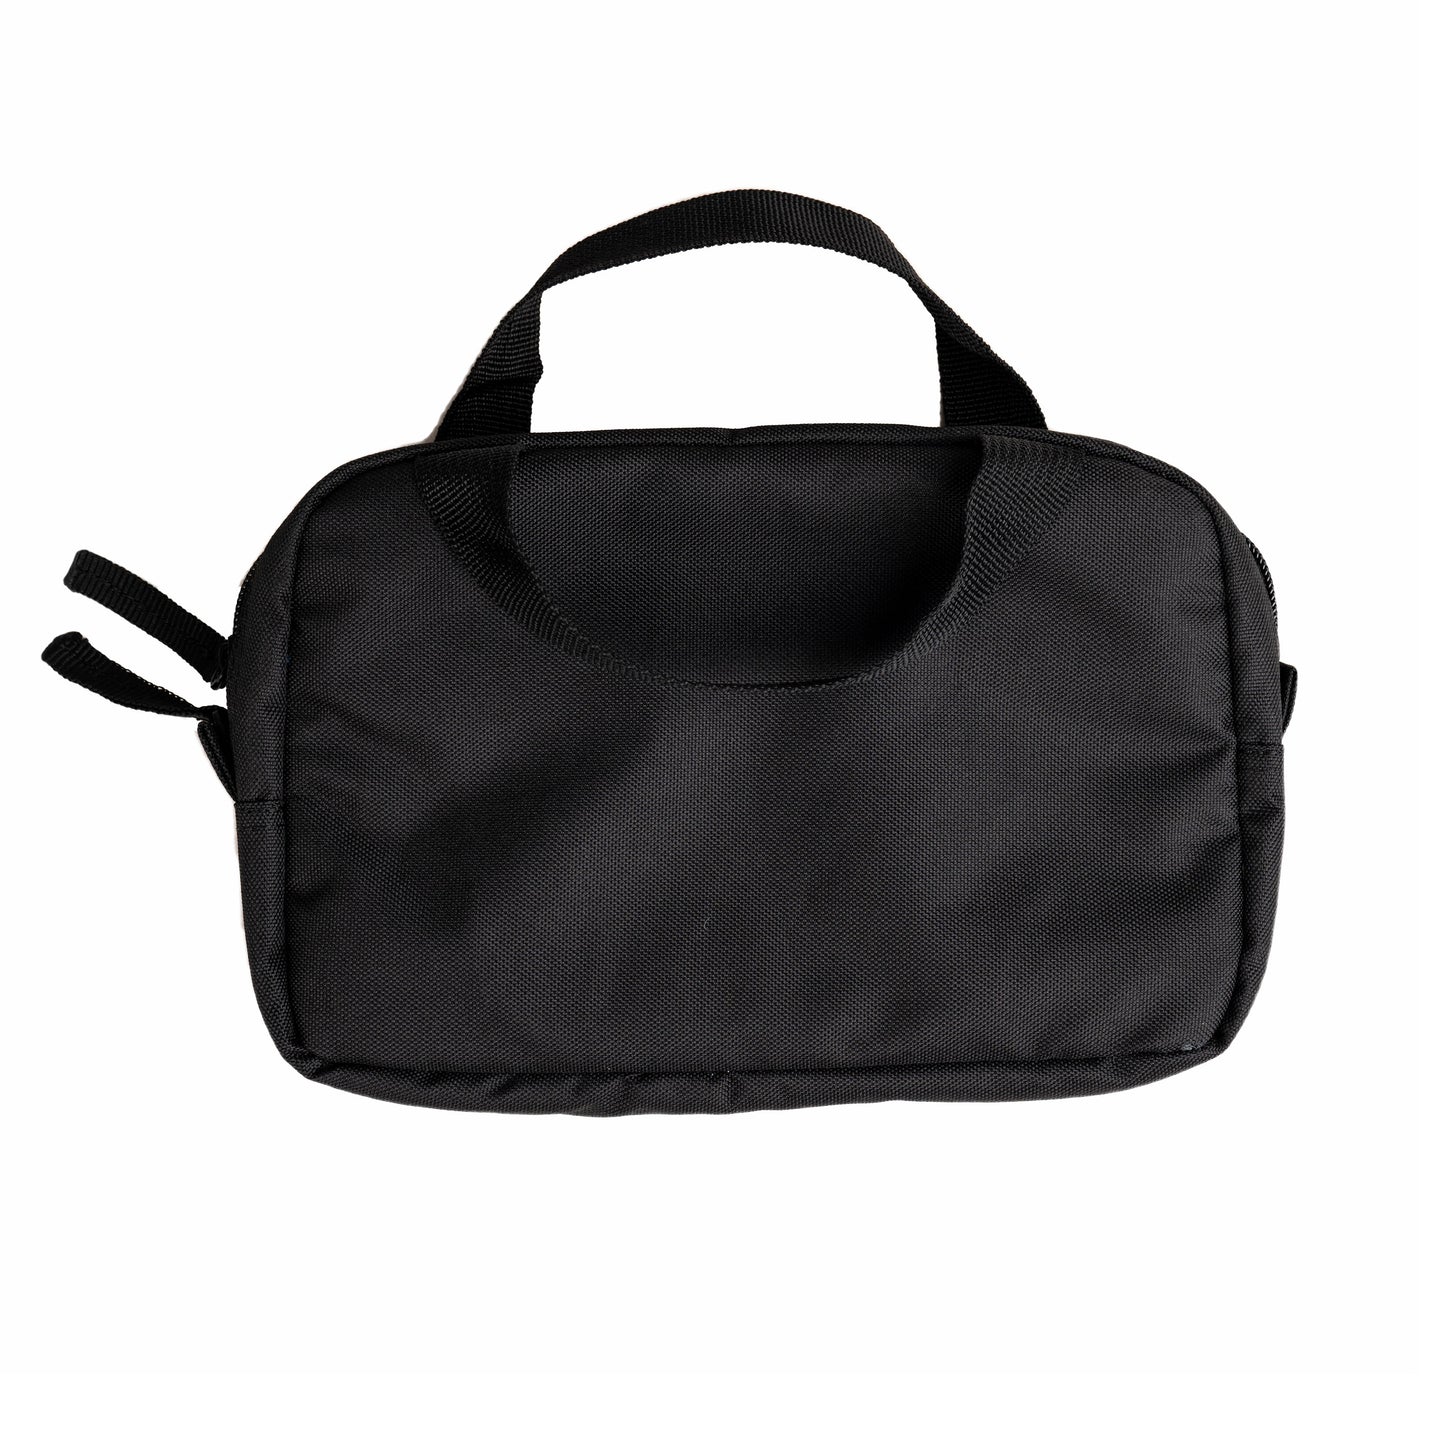 AZA Handbag Dark Series - Black / Gold